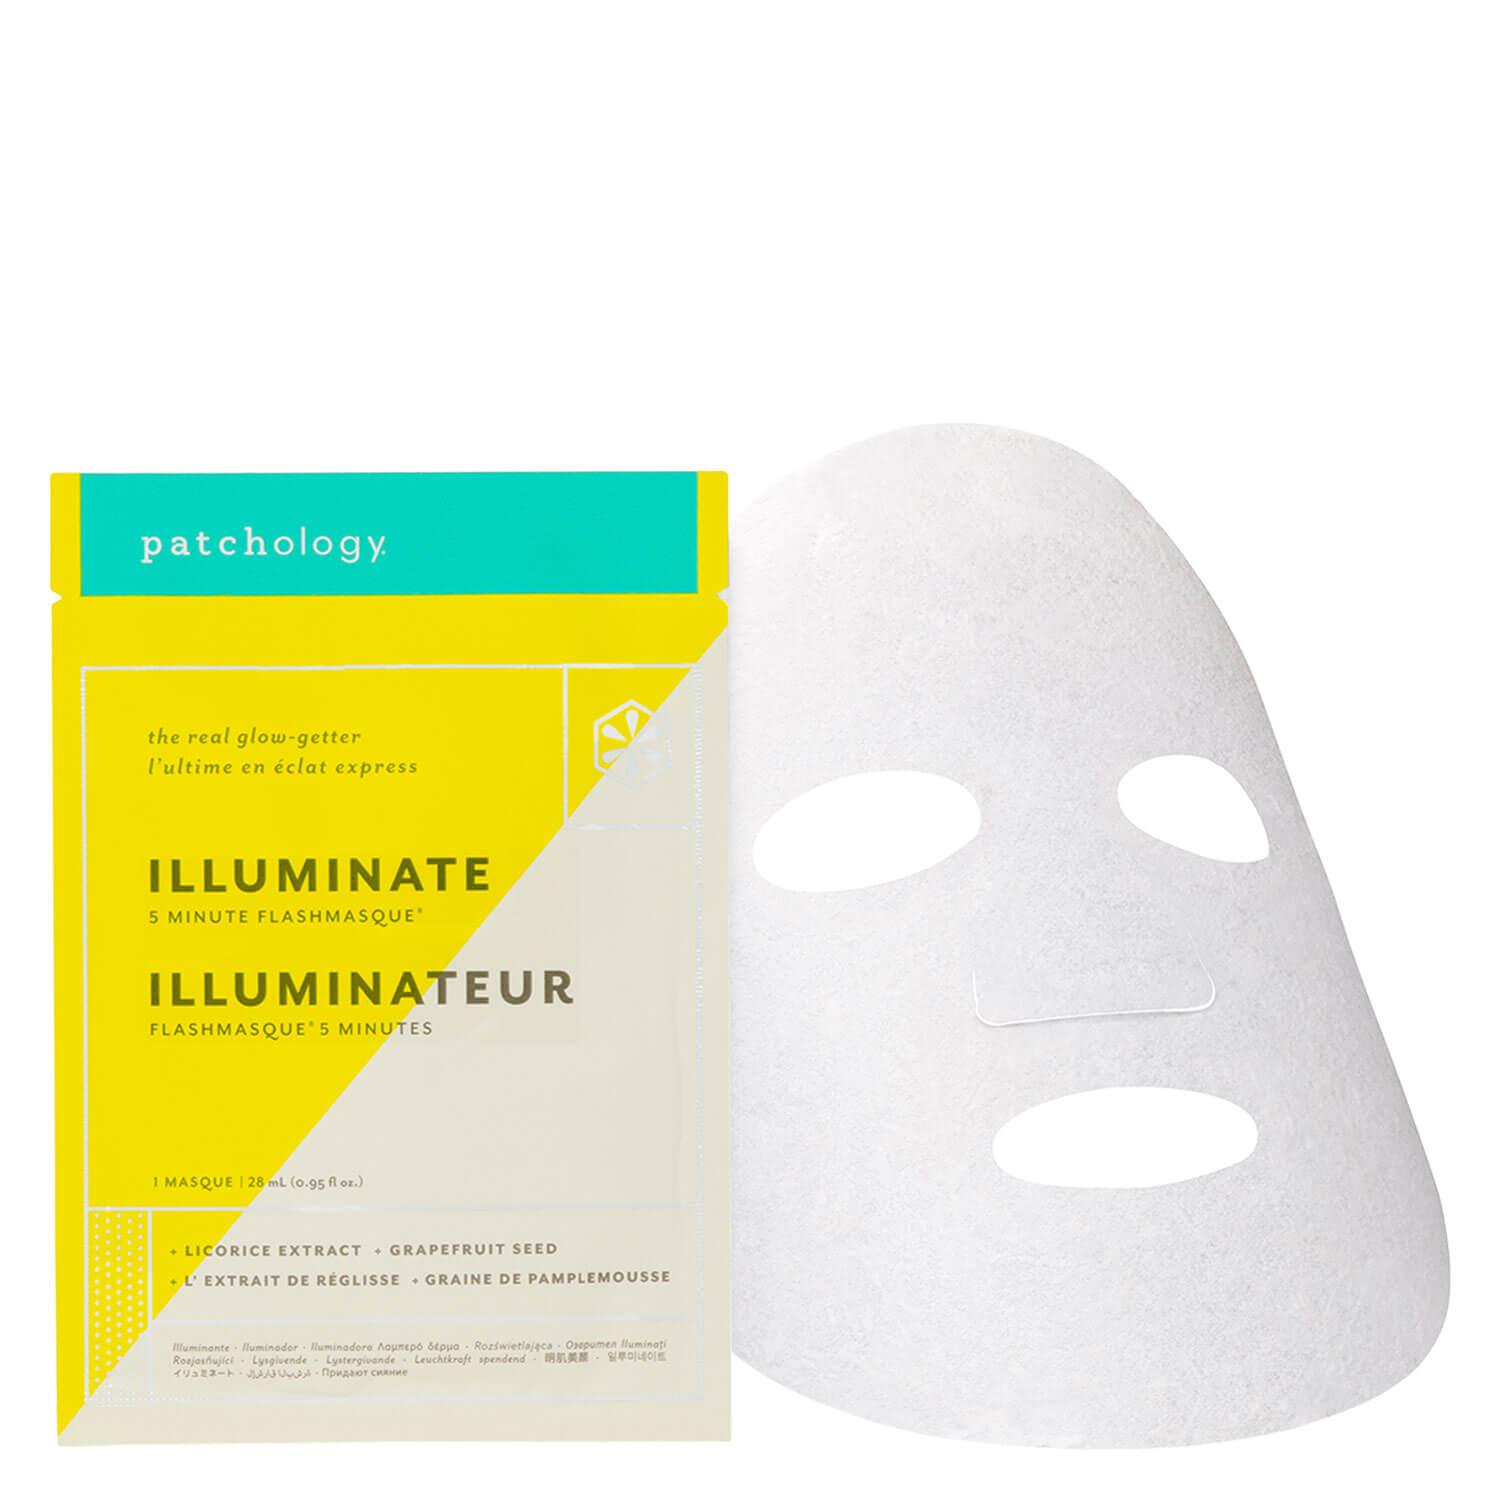 FlashMasque - Illuminate 5 Minute Sheet Mask